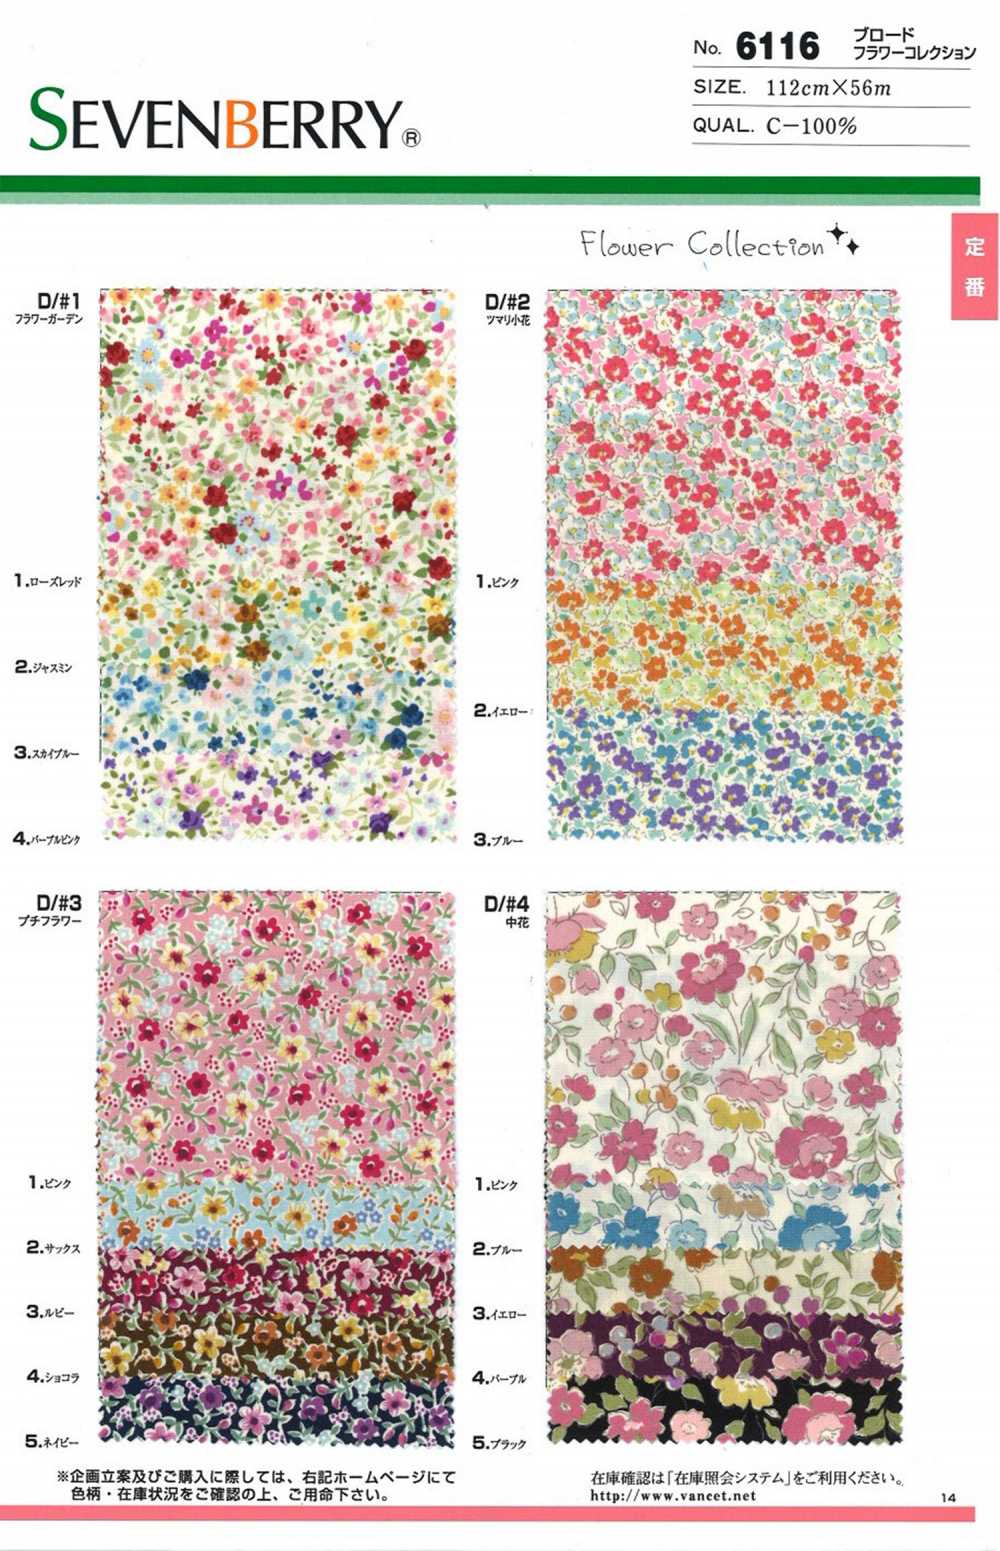 6116 SEVENBERRY Wollstoff Blumenkollektion[Textilgewebe] VANCET